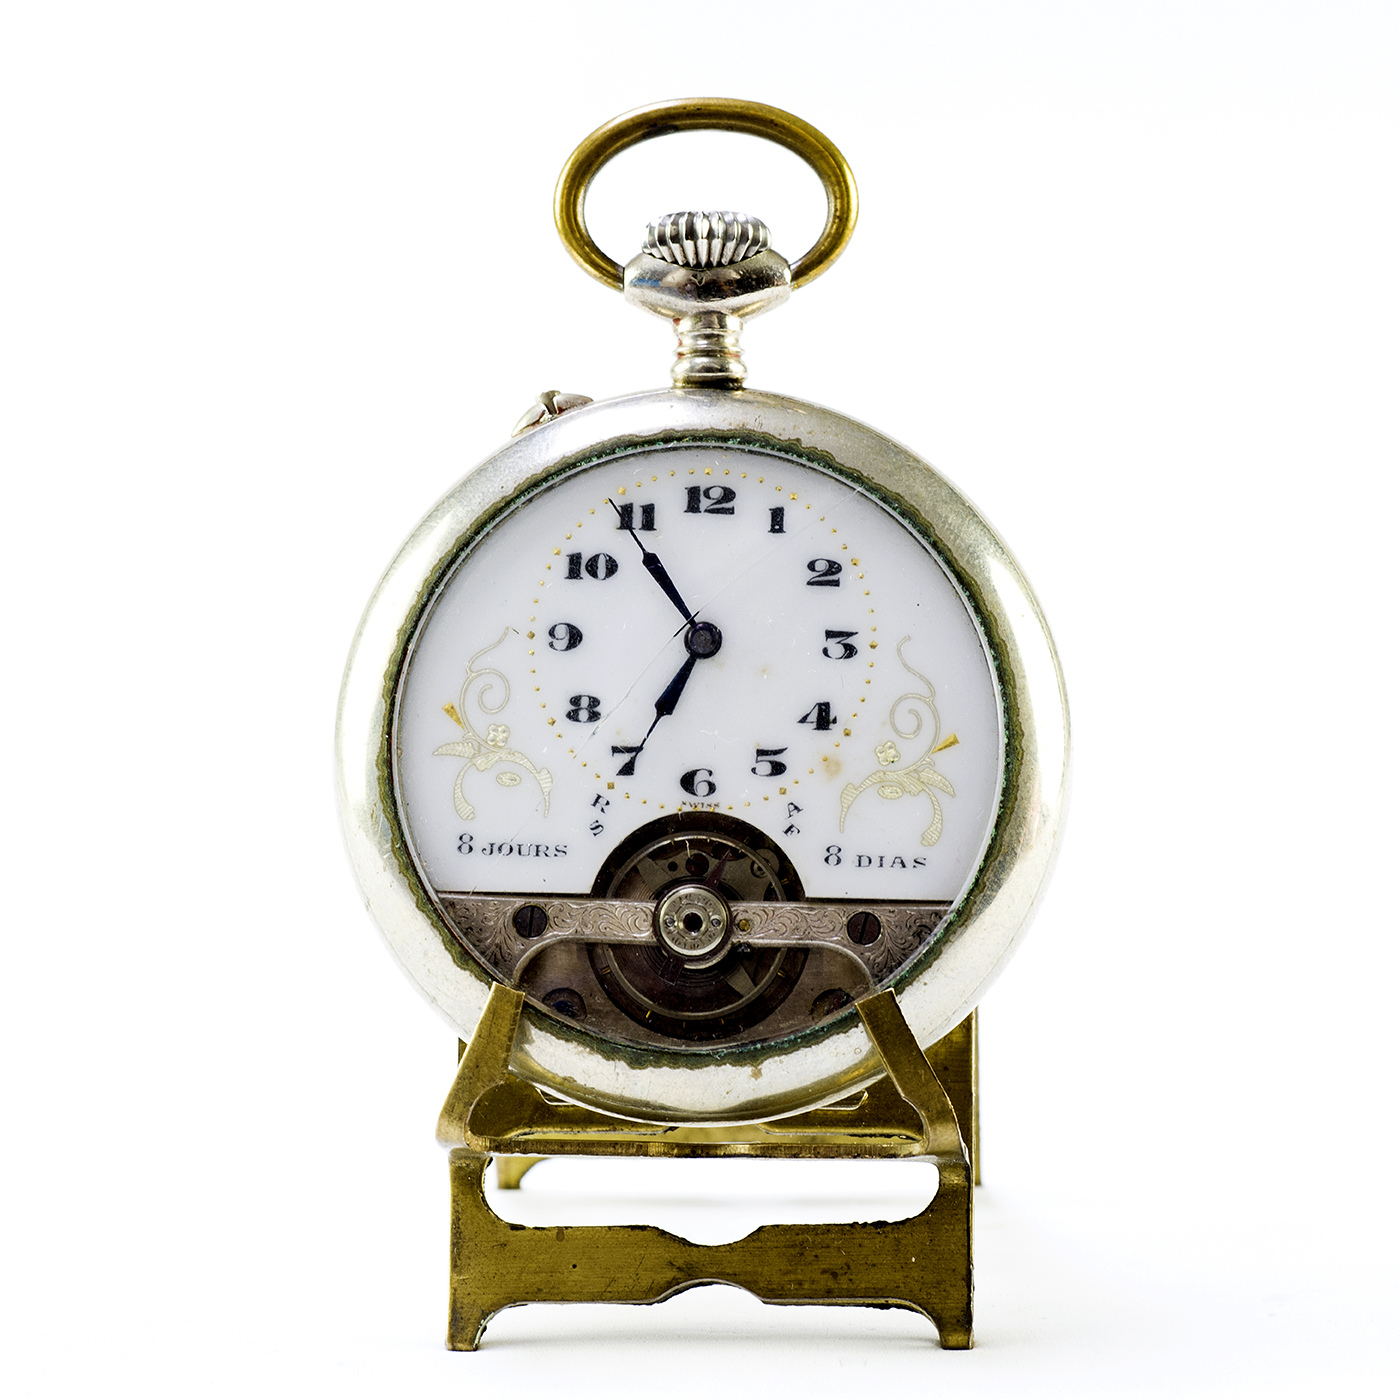 JUBIDOS (Licencia Hebdomas). Reloj de Bolsillo, Lepine, remontoir, Ocho días Cuerda. Suiza, ca. 1900